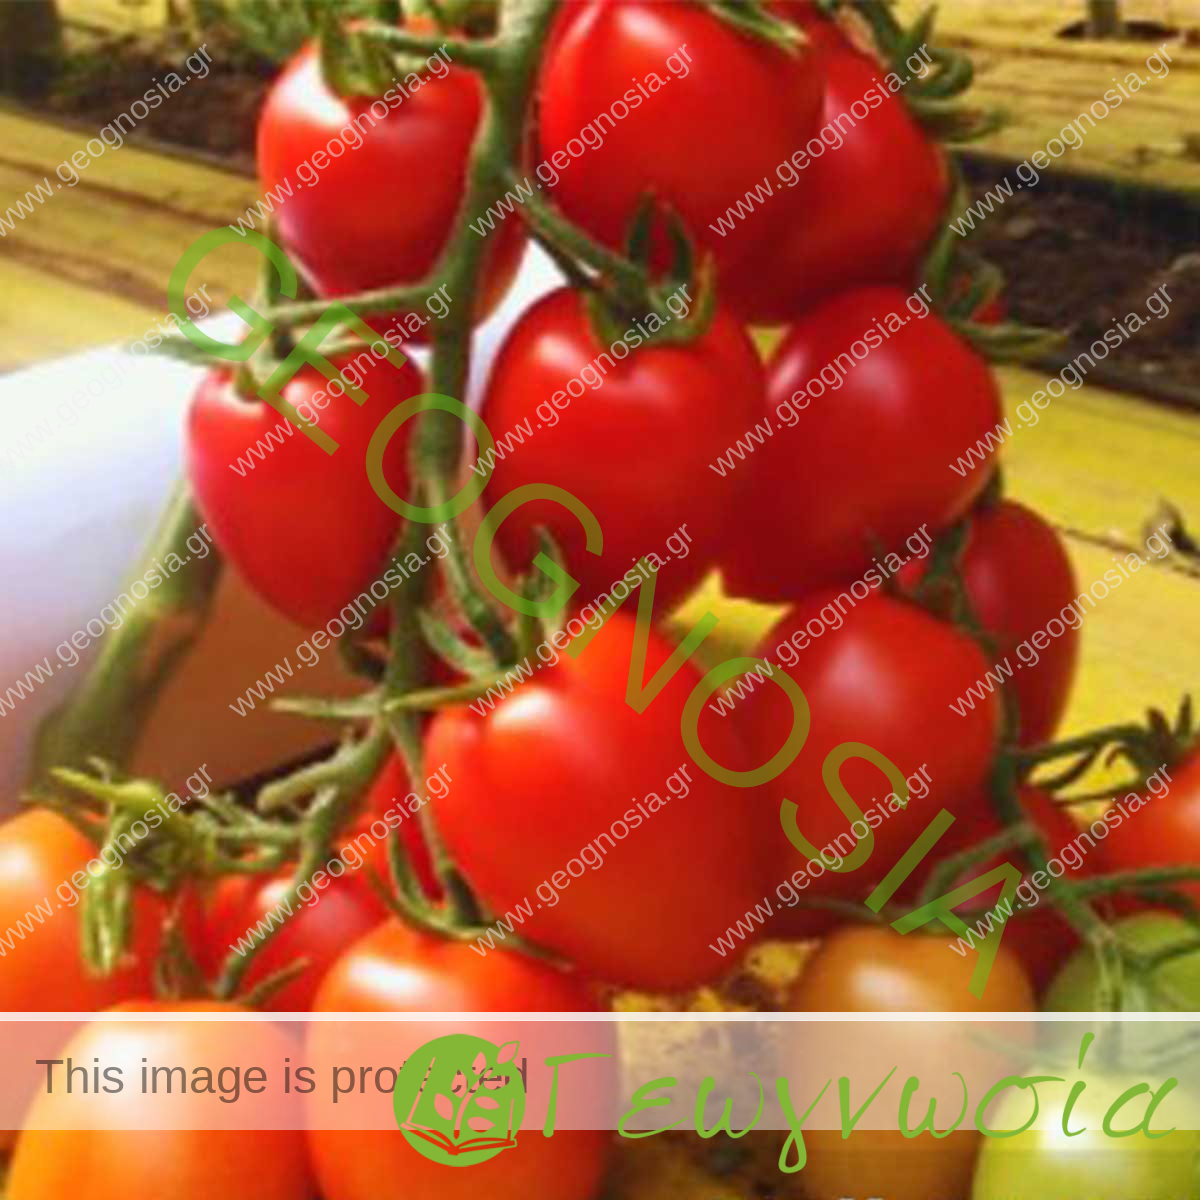 sporoi-tomatas-valletto-f1-unigen-seeds